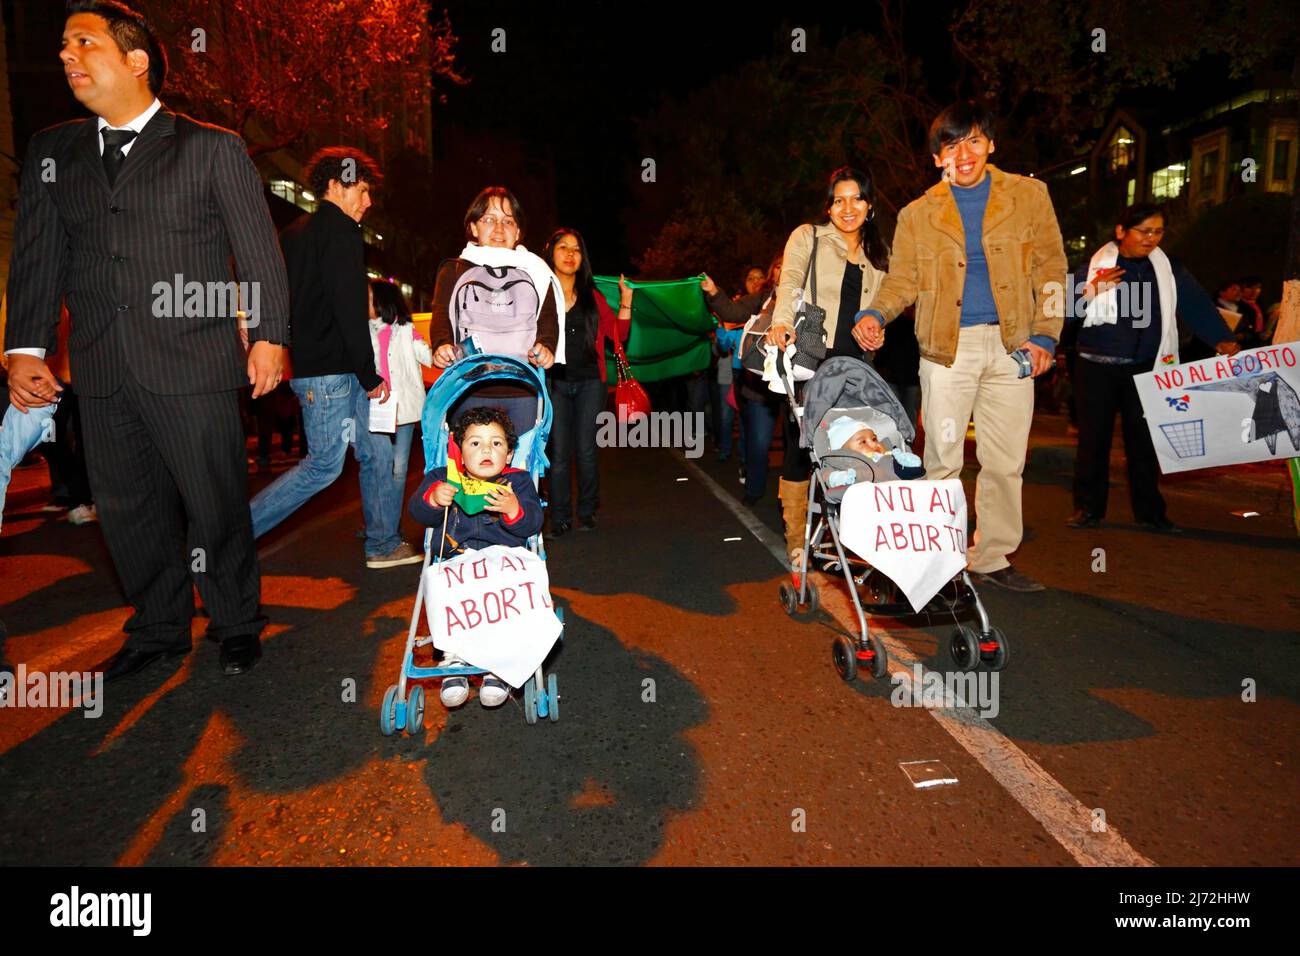 LA PAZ, BOLIVIEN, 22.. August 2013. Menschen, die Kleinkinder in Kinderwagen/Kinderwagen schieben, nehmen an einem marsch Teil, der vom Red Pro-Vida (Pro Life Network) organisiert wird, um gegen die Entkriminalisierung von Abtreibungen zu protestieren. Bolivien debattiert seit März 2012 über die Entkriminalisierung von Abtreibungen. Stockfoto